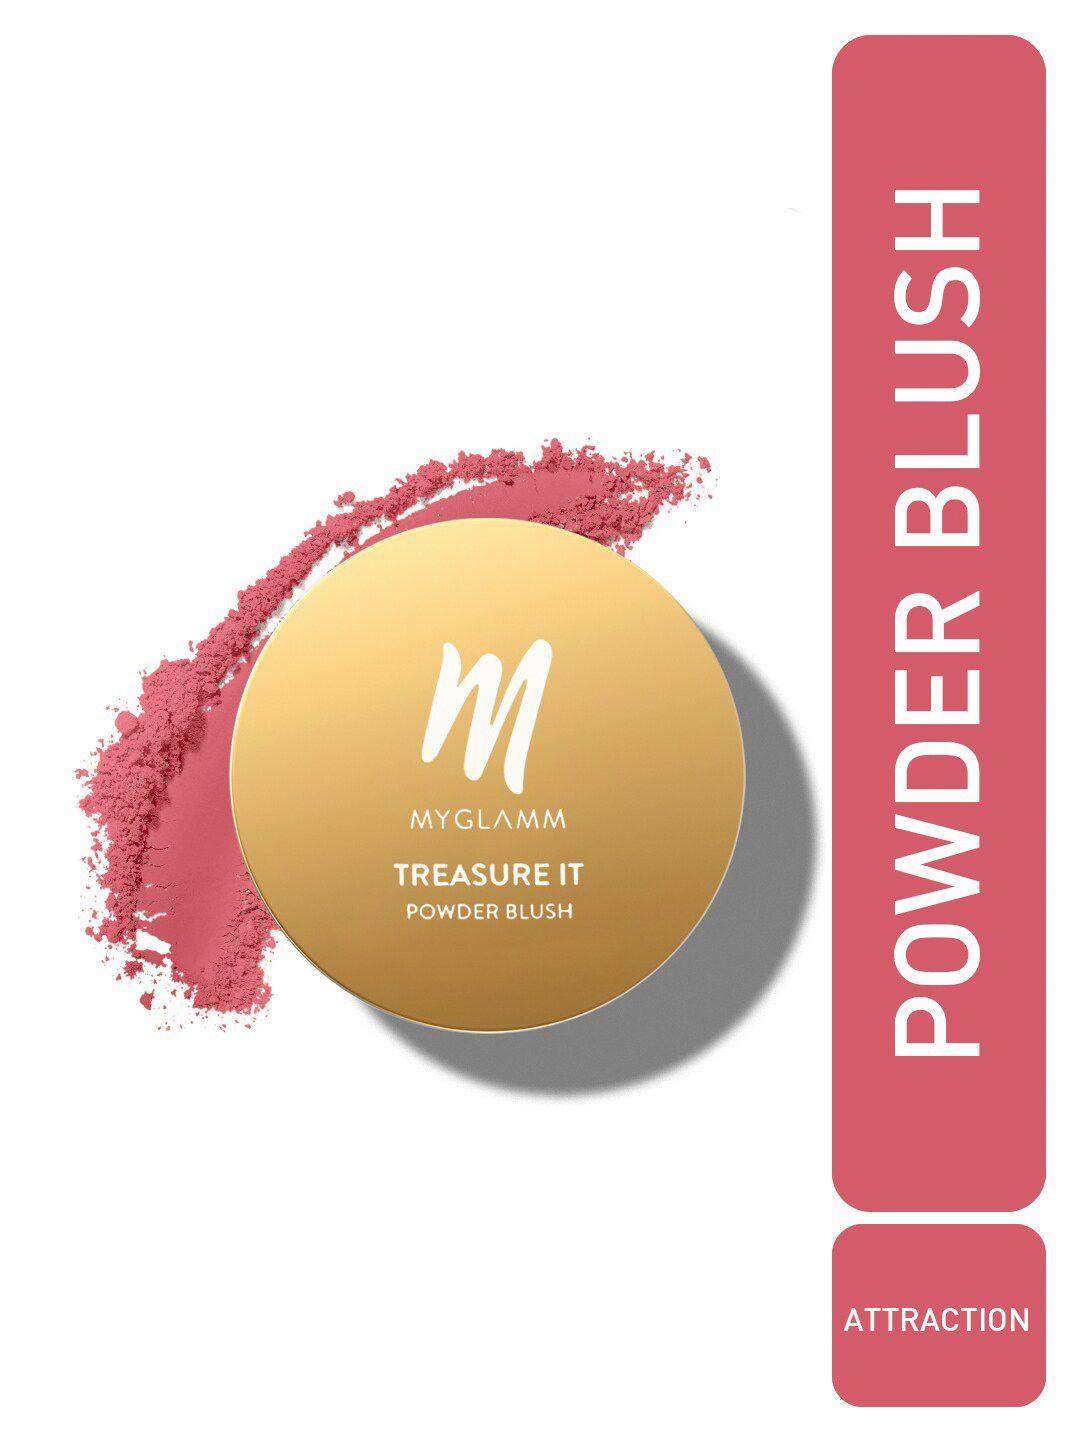 myglamm treasure it powder matte blush - 4g - attraction